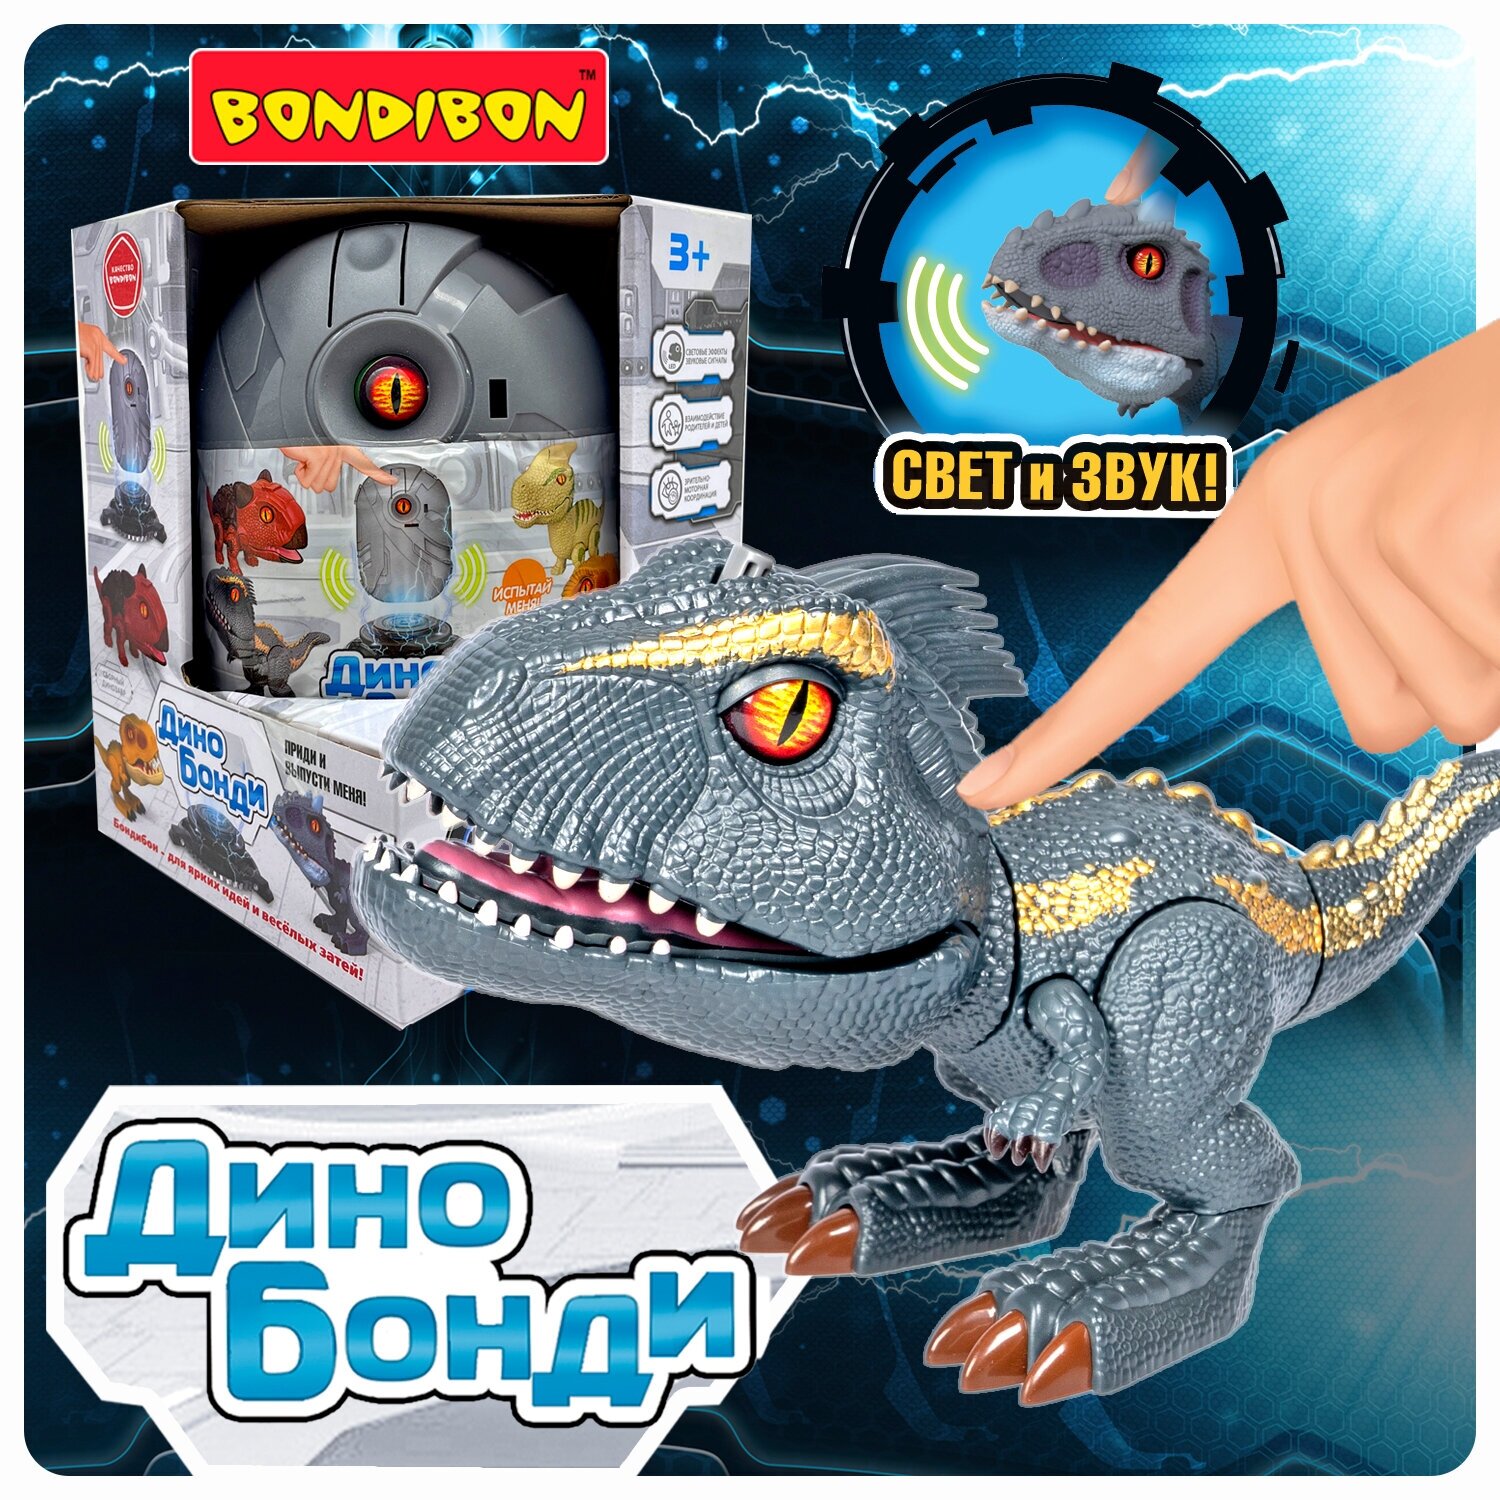 Динозавр в яйце Bondibon сборная игрушка Дино Бонди конструктор Индораптор с эффектом света и звука, подарок